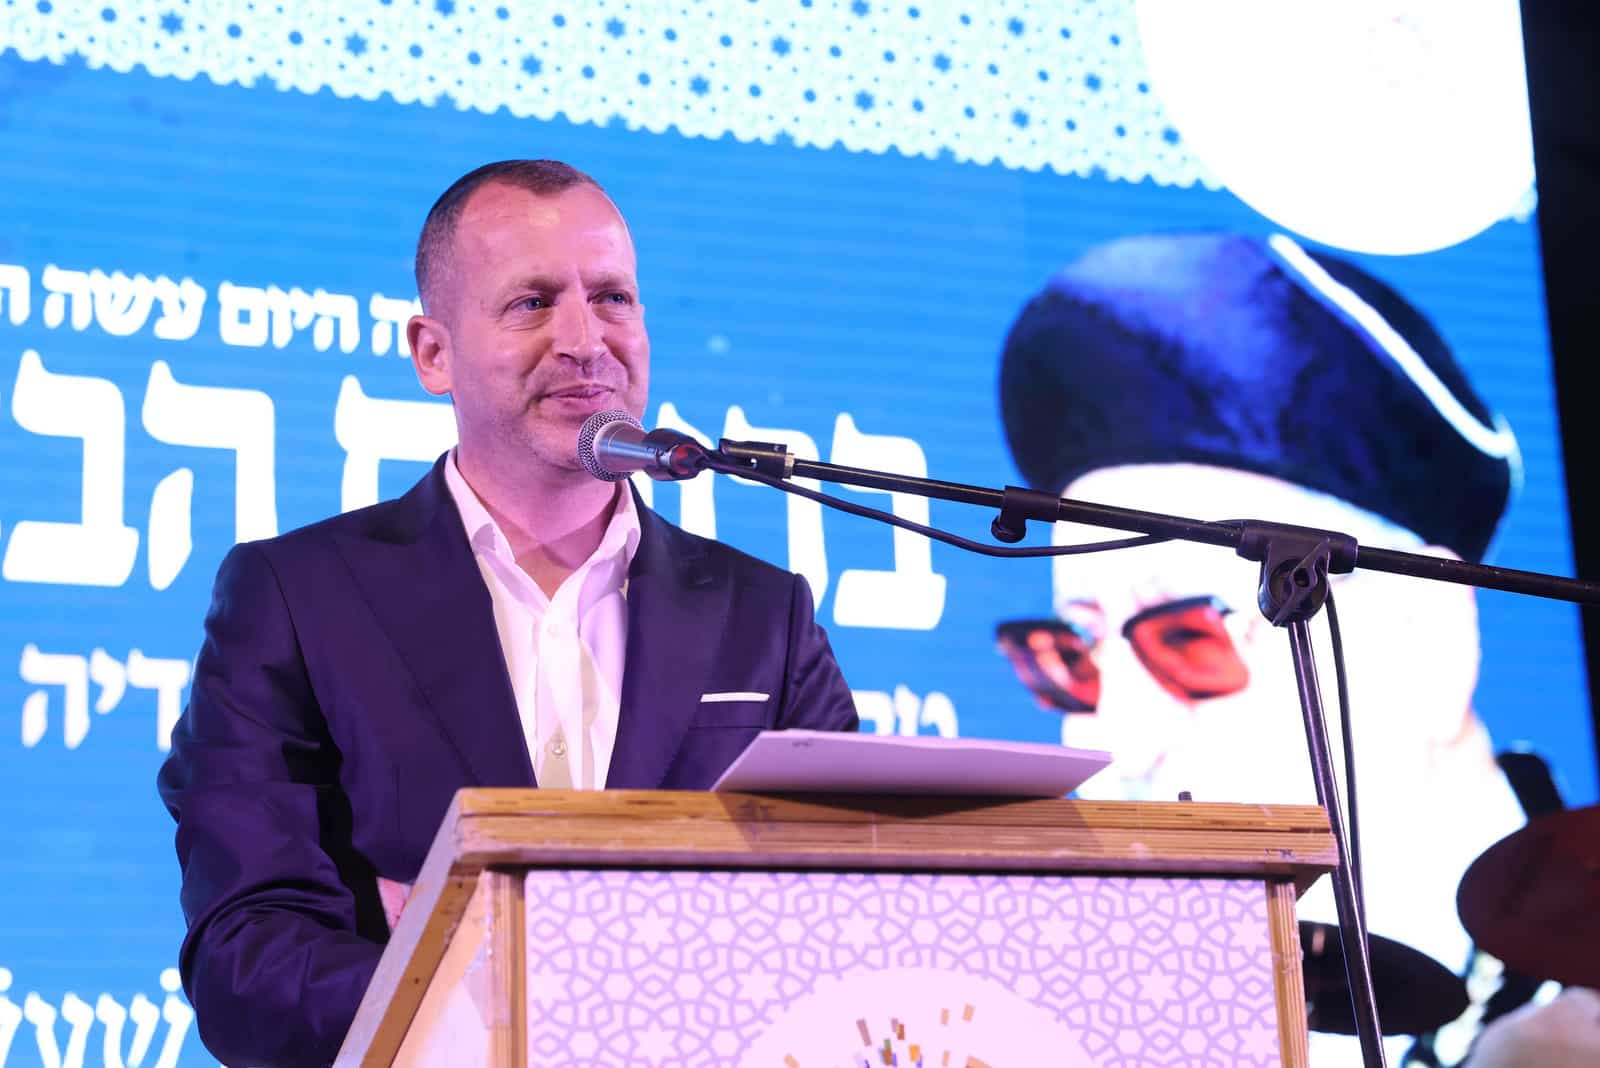 בתל אביב העניקו מלגות לכותבי חידושי תורה לענ מרן הגרע יוסף זצל